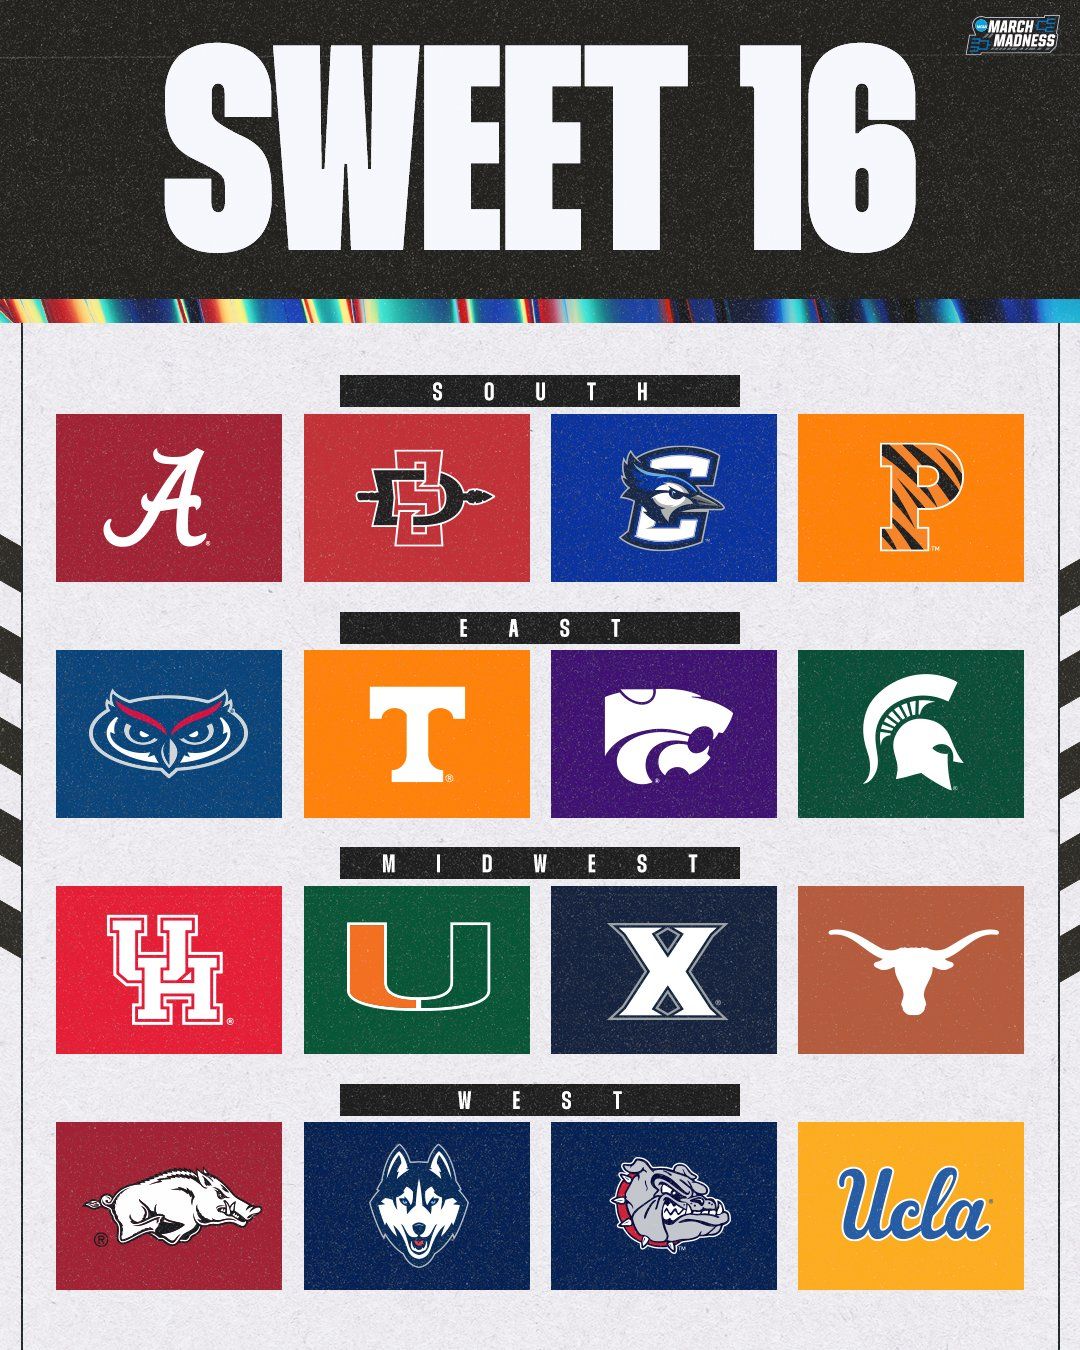 Sweet 16 teams